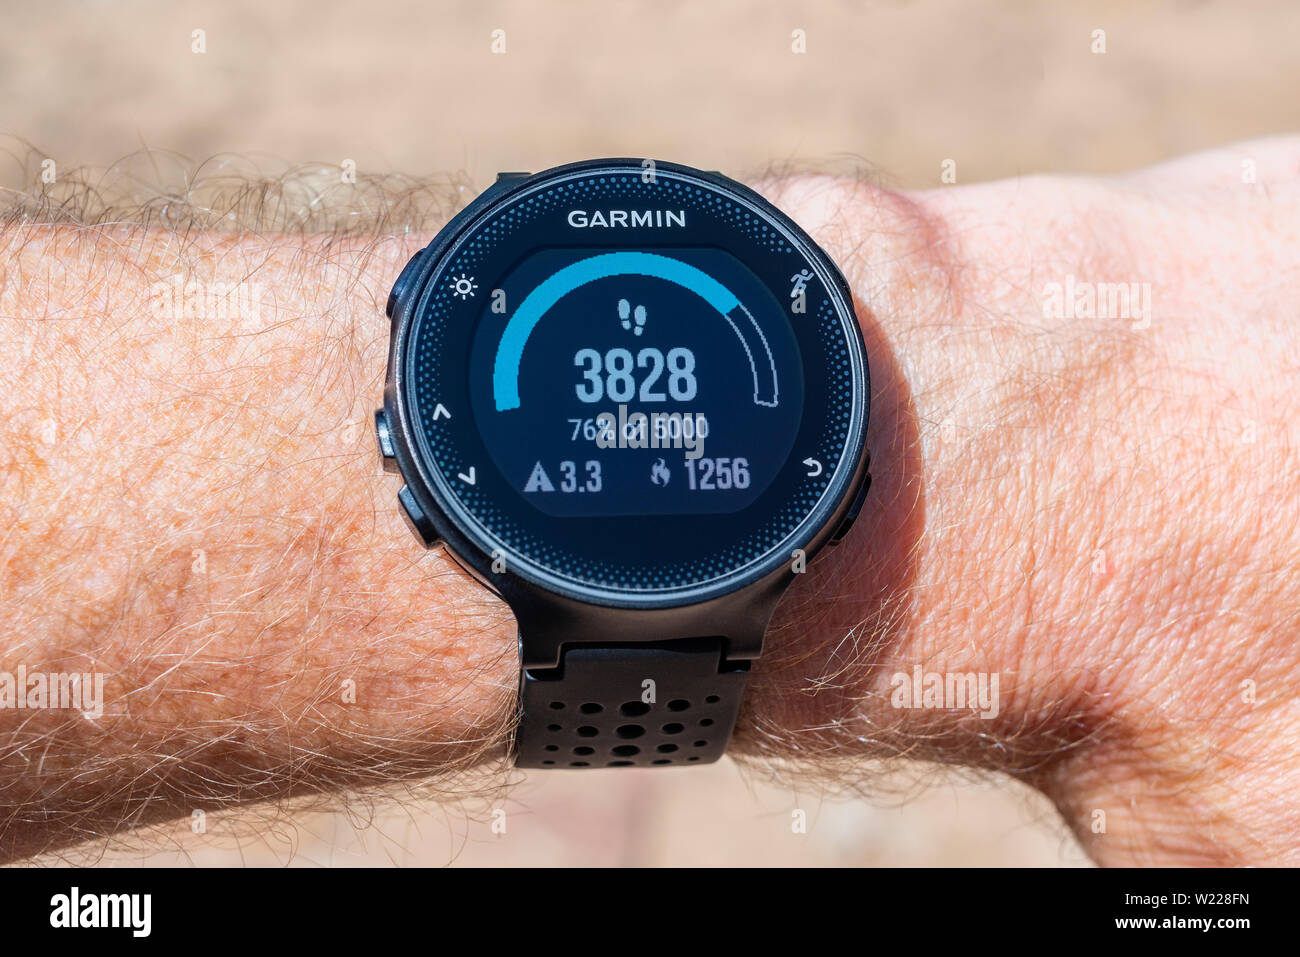 Garmin Reloj inteligente de pulsera masculino mostrando un contador de pasos,  distancia recorrida en kilómetros y la cantidad de calorías quemadas  Fotografía de stock - Alamy